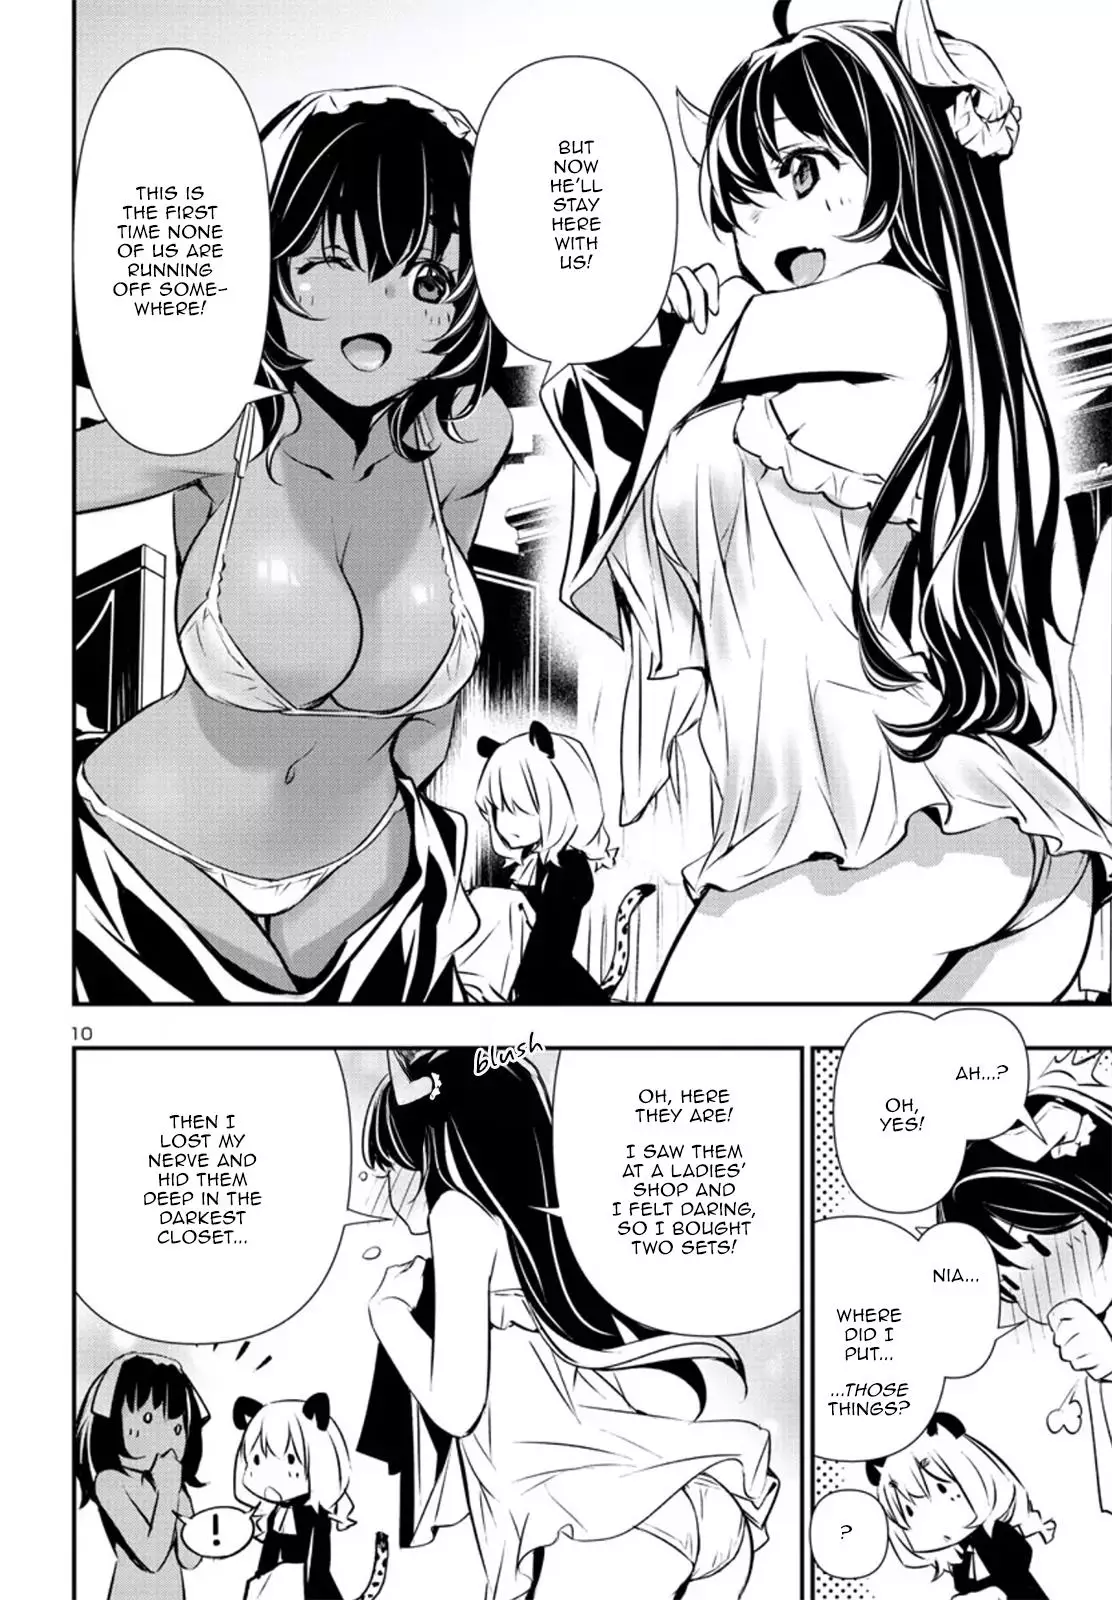 Shinju no Nectar - 79 page 10-5943c88f